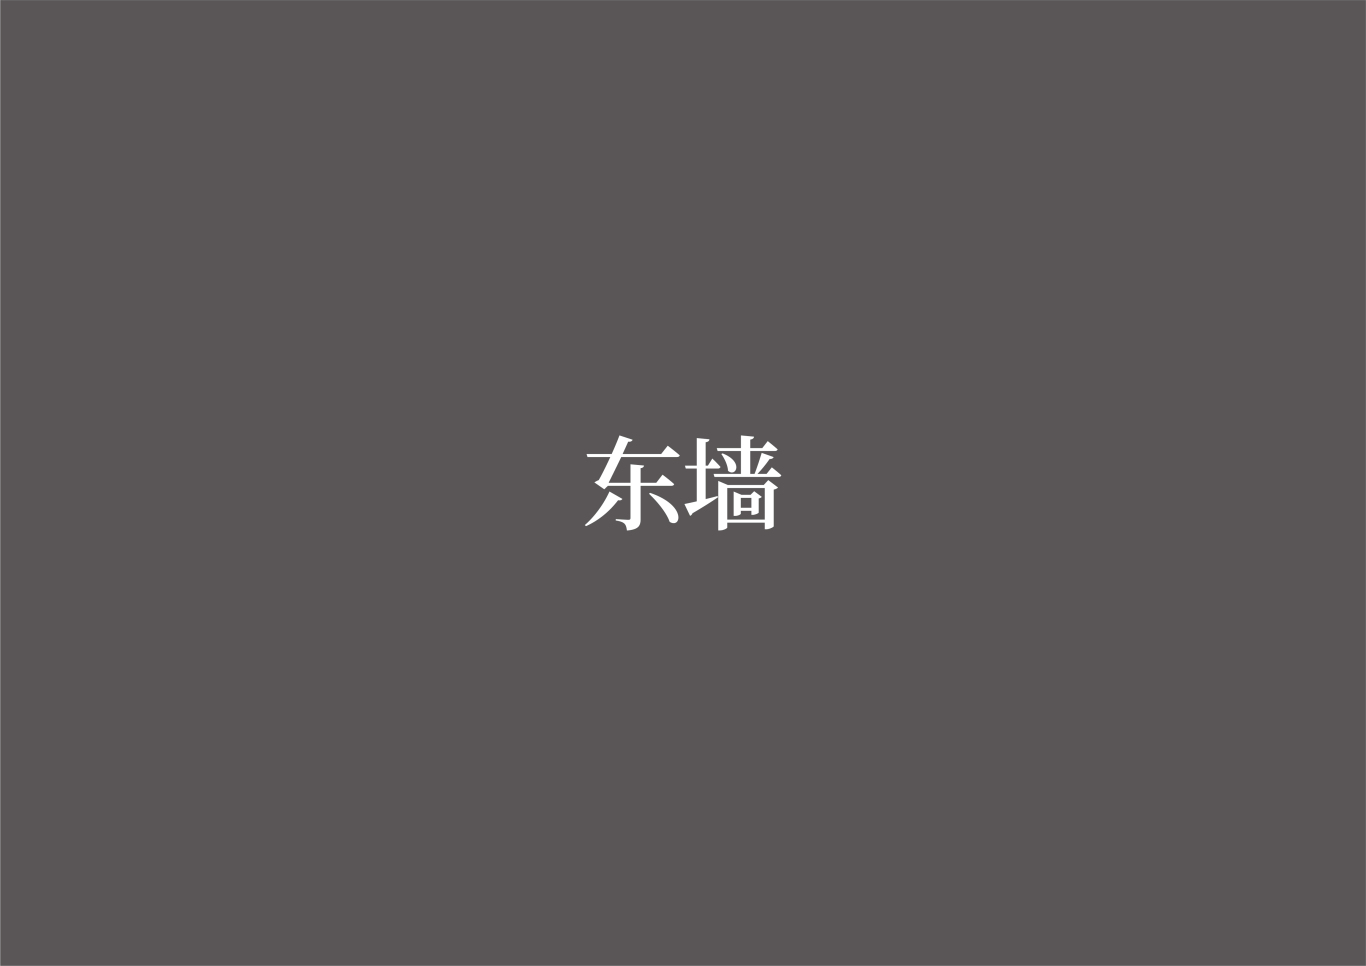 张謇小镇-海门山歌文化馆策展设计图12